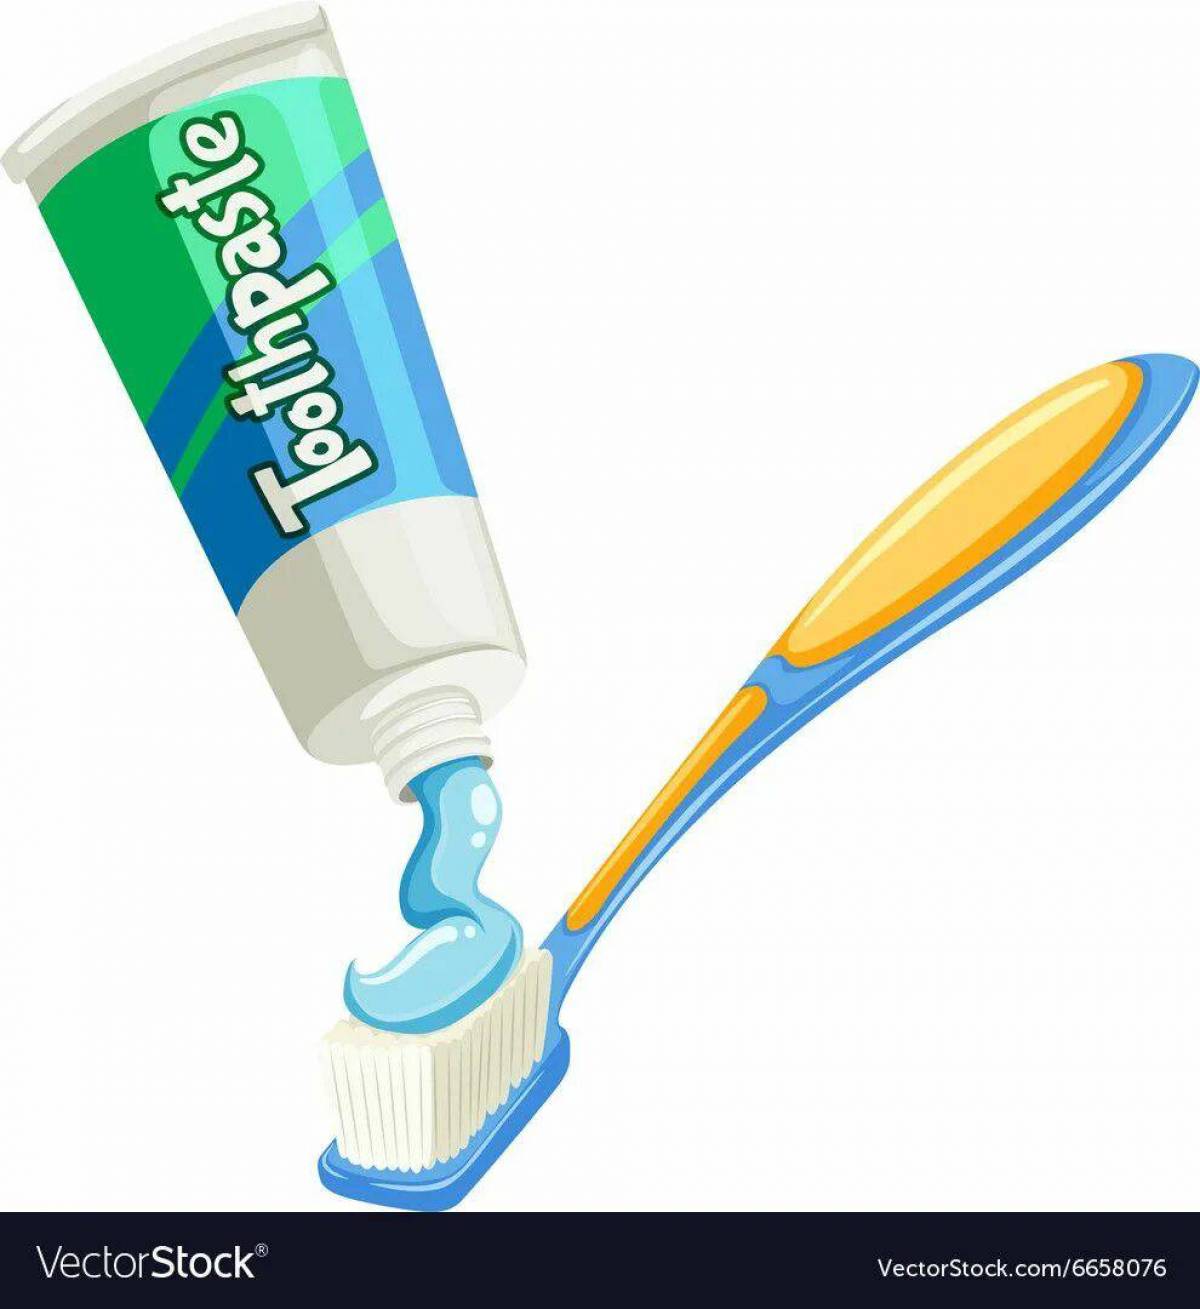 Зубная щетка и паста для детей #36